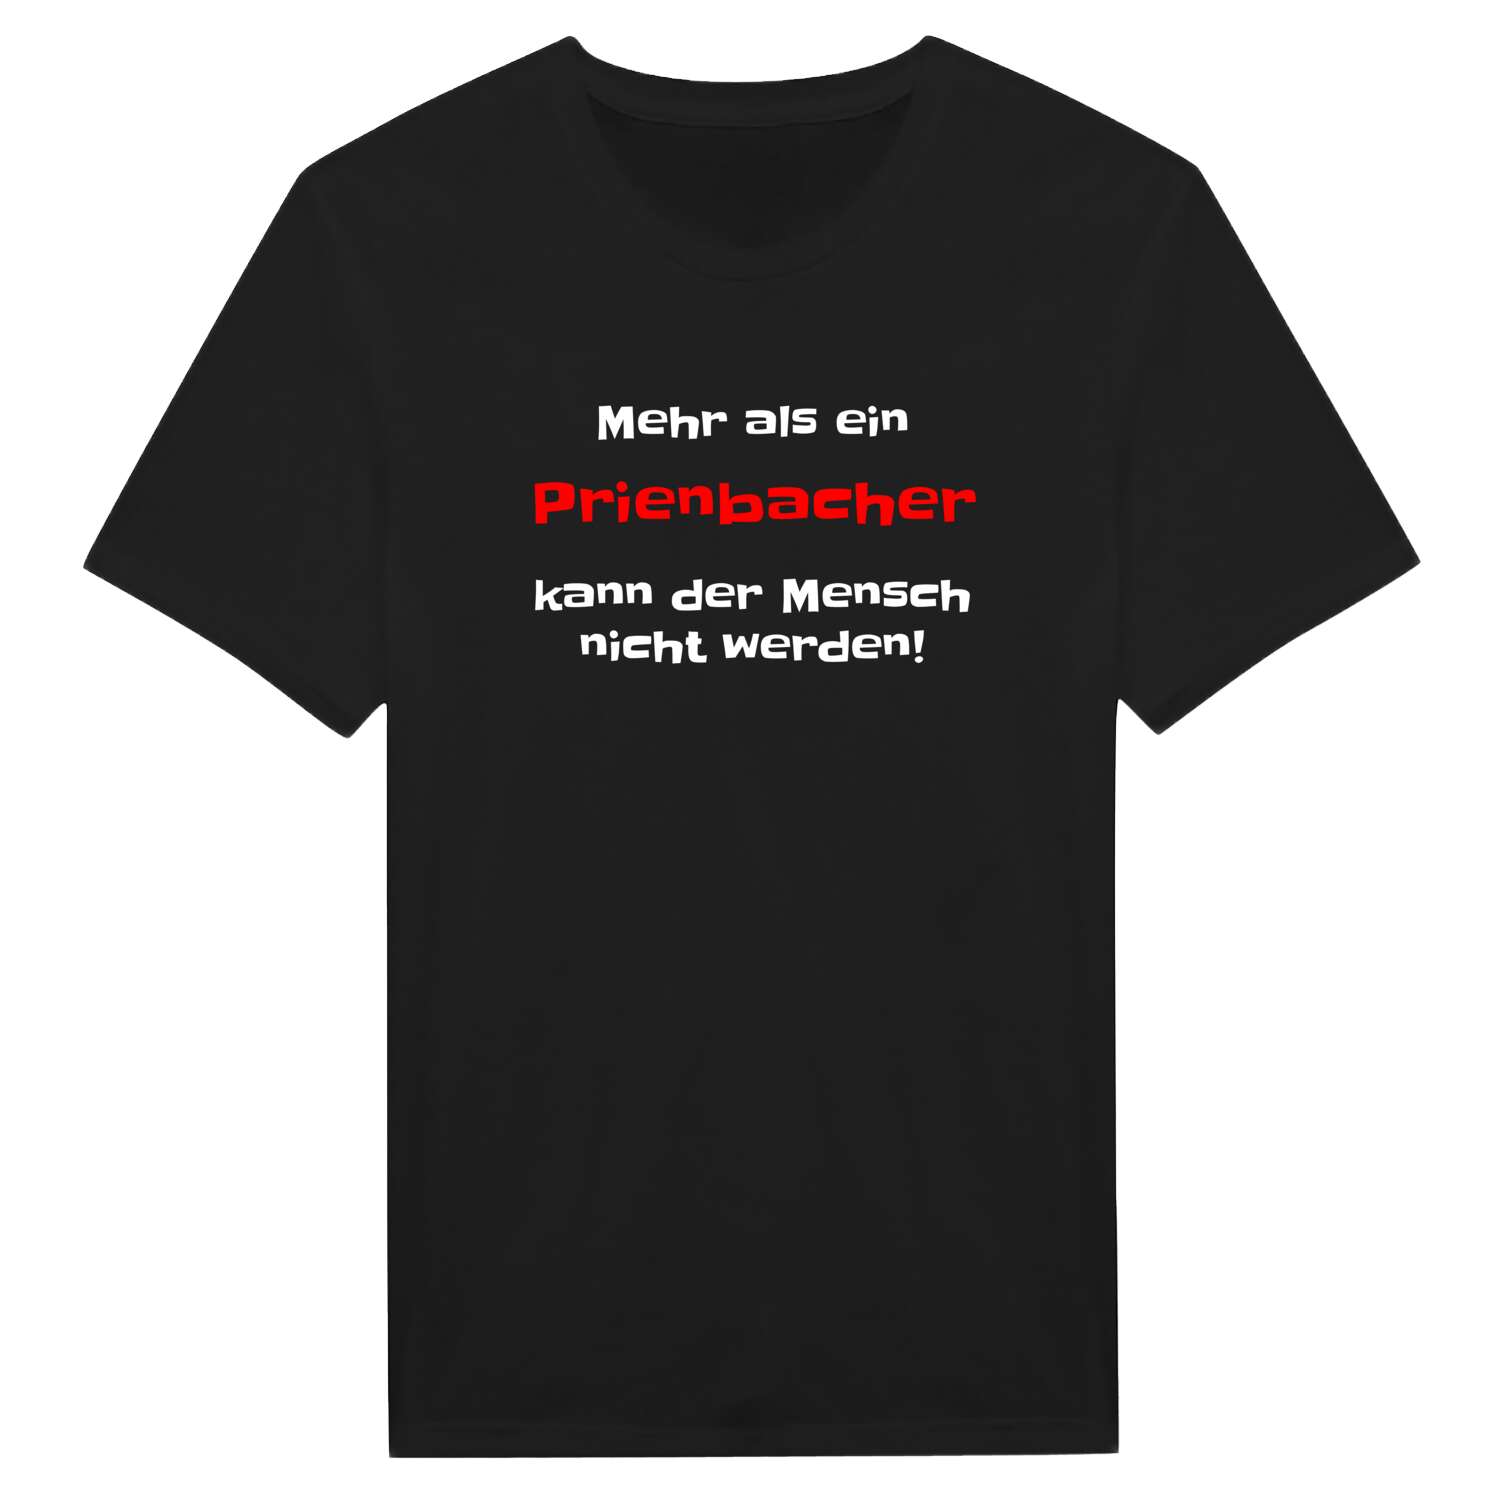 Prienbach T-Shirt »Mehr als ein«